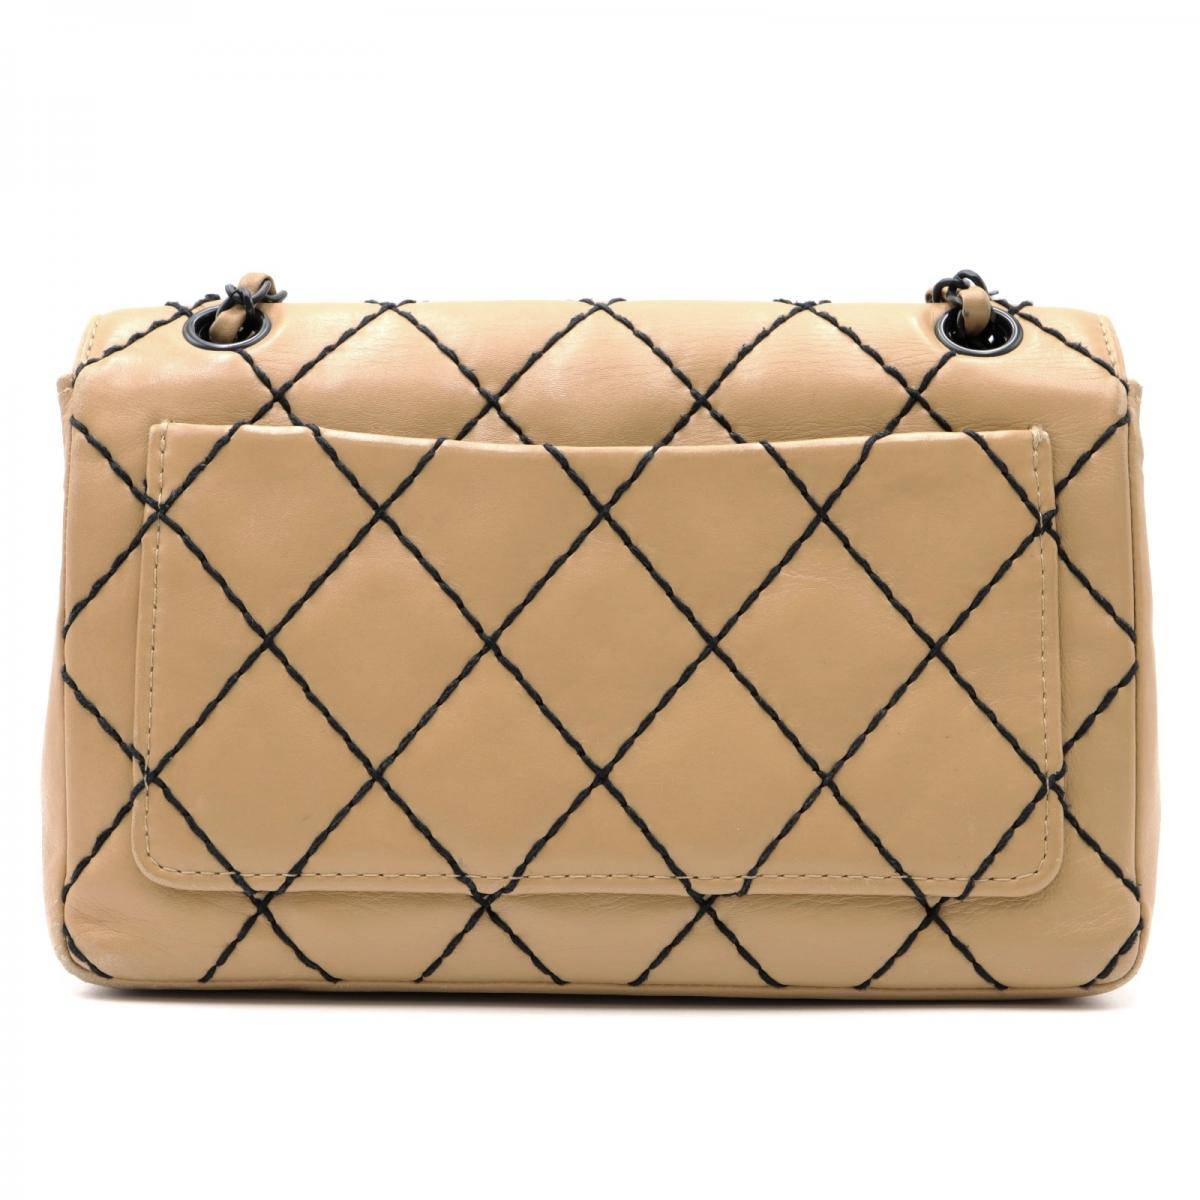 CC Surpique Leather Flap Bag 0.0